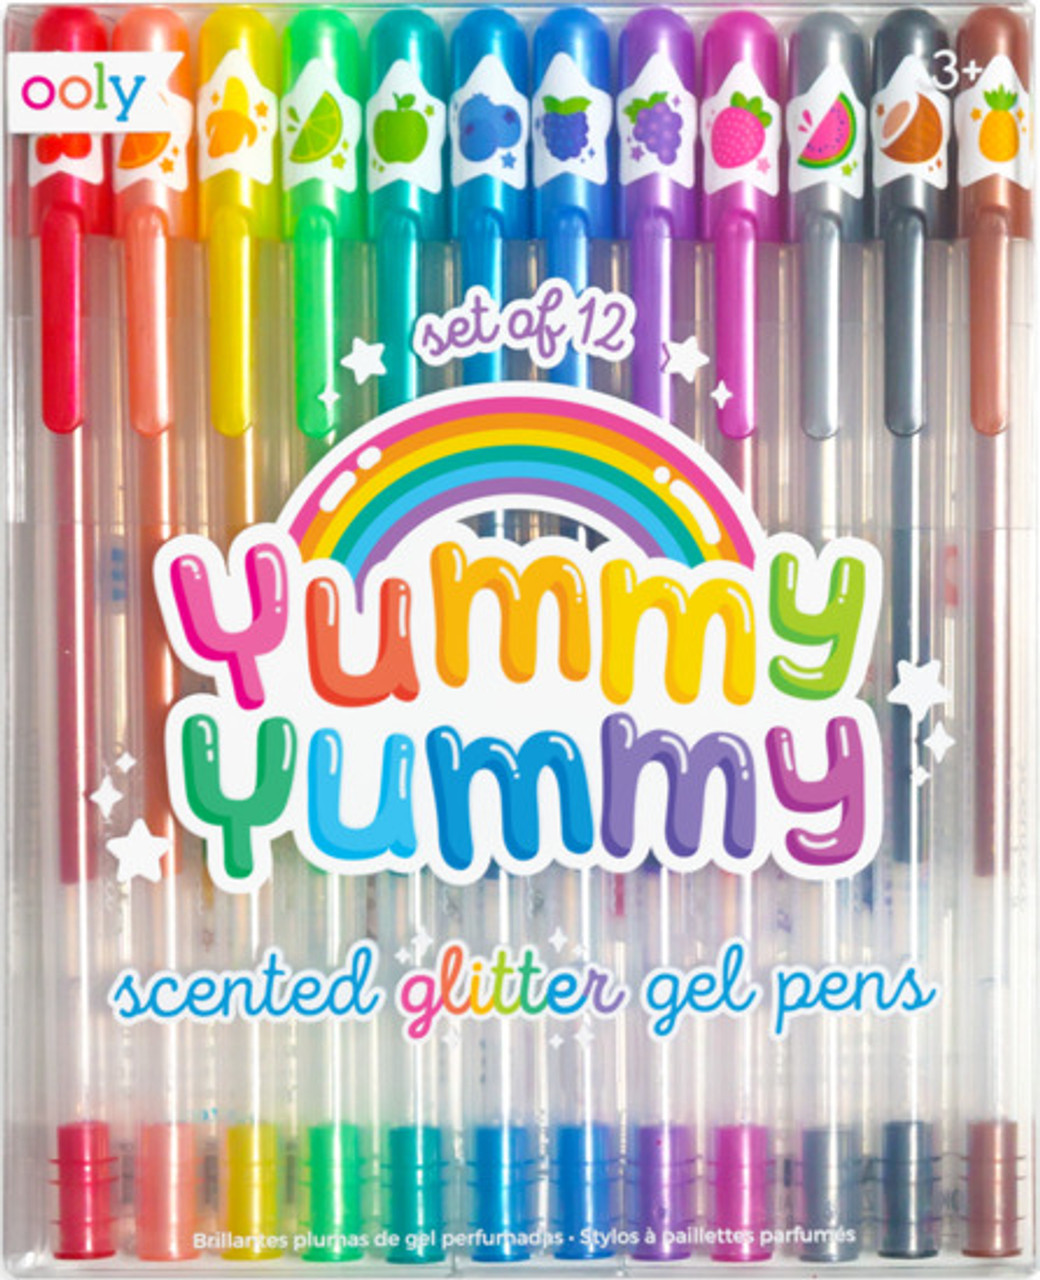 Yummy Yummy Scented Glitter Gel Pens 2